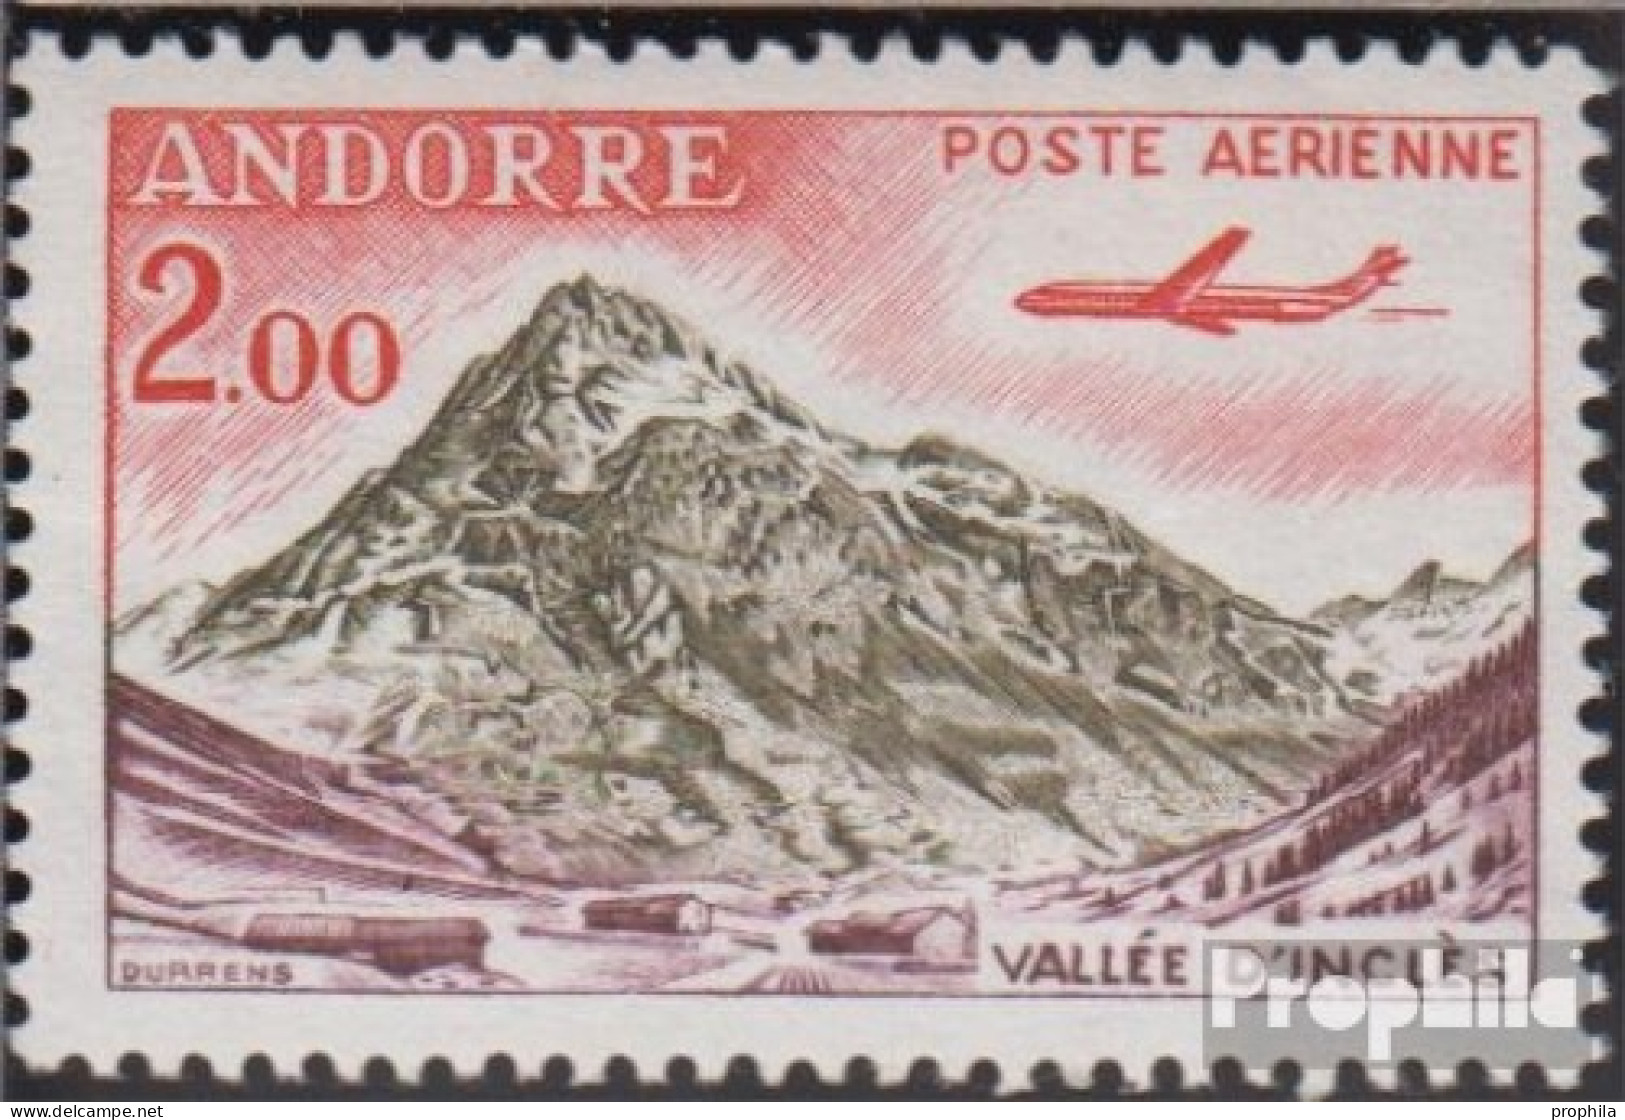 Andorra - Französische Post 175 Postfrisch 1961 Landschaften - Booklets